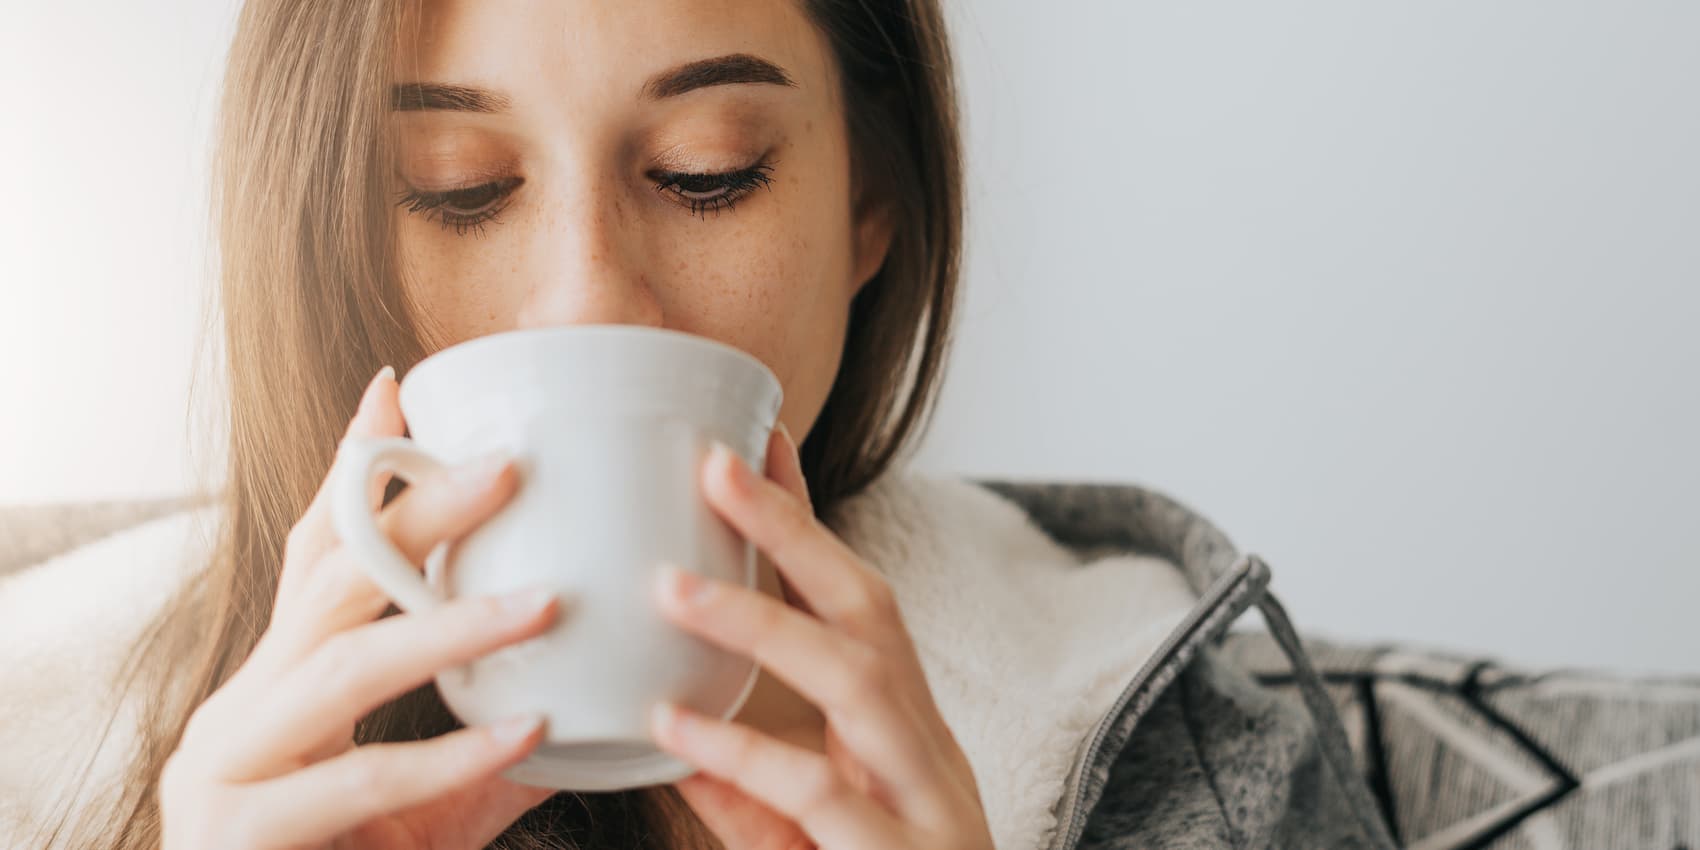 How Do Caffeine and Alcohol Affect My Health?